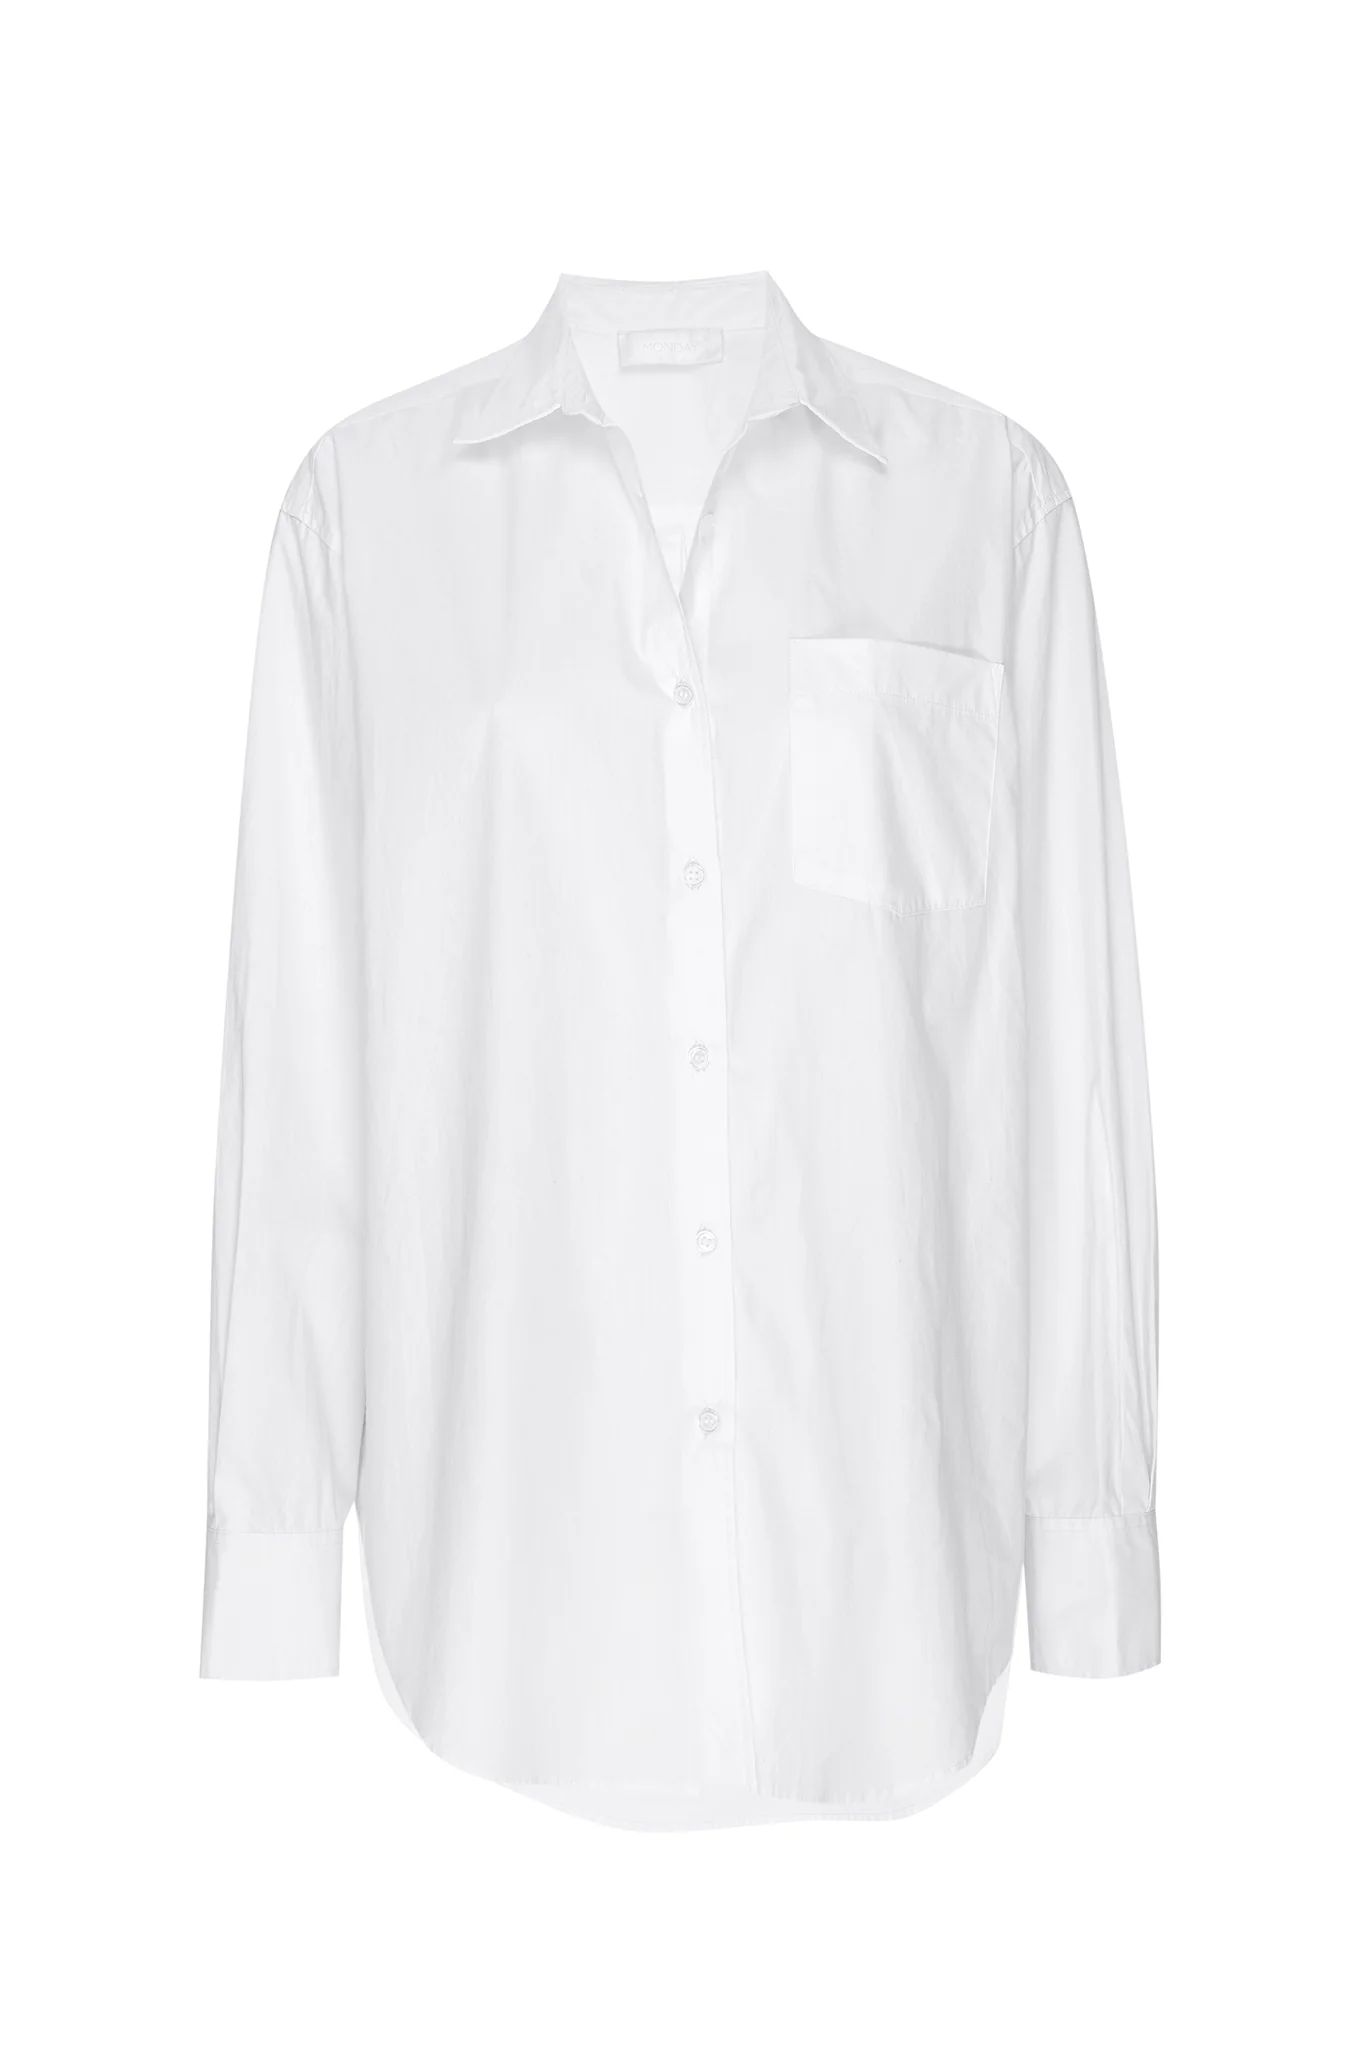 La Jolla Shirt - White | Monday Swimwear